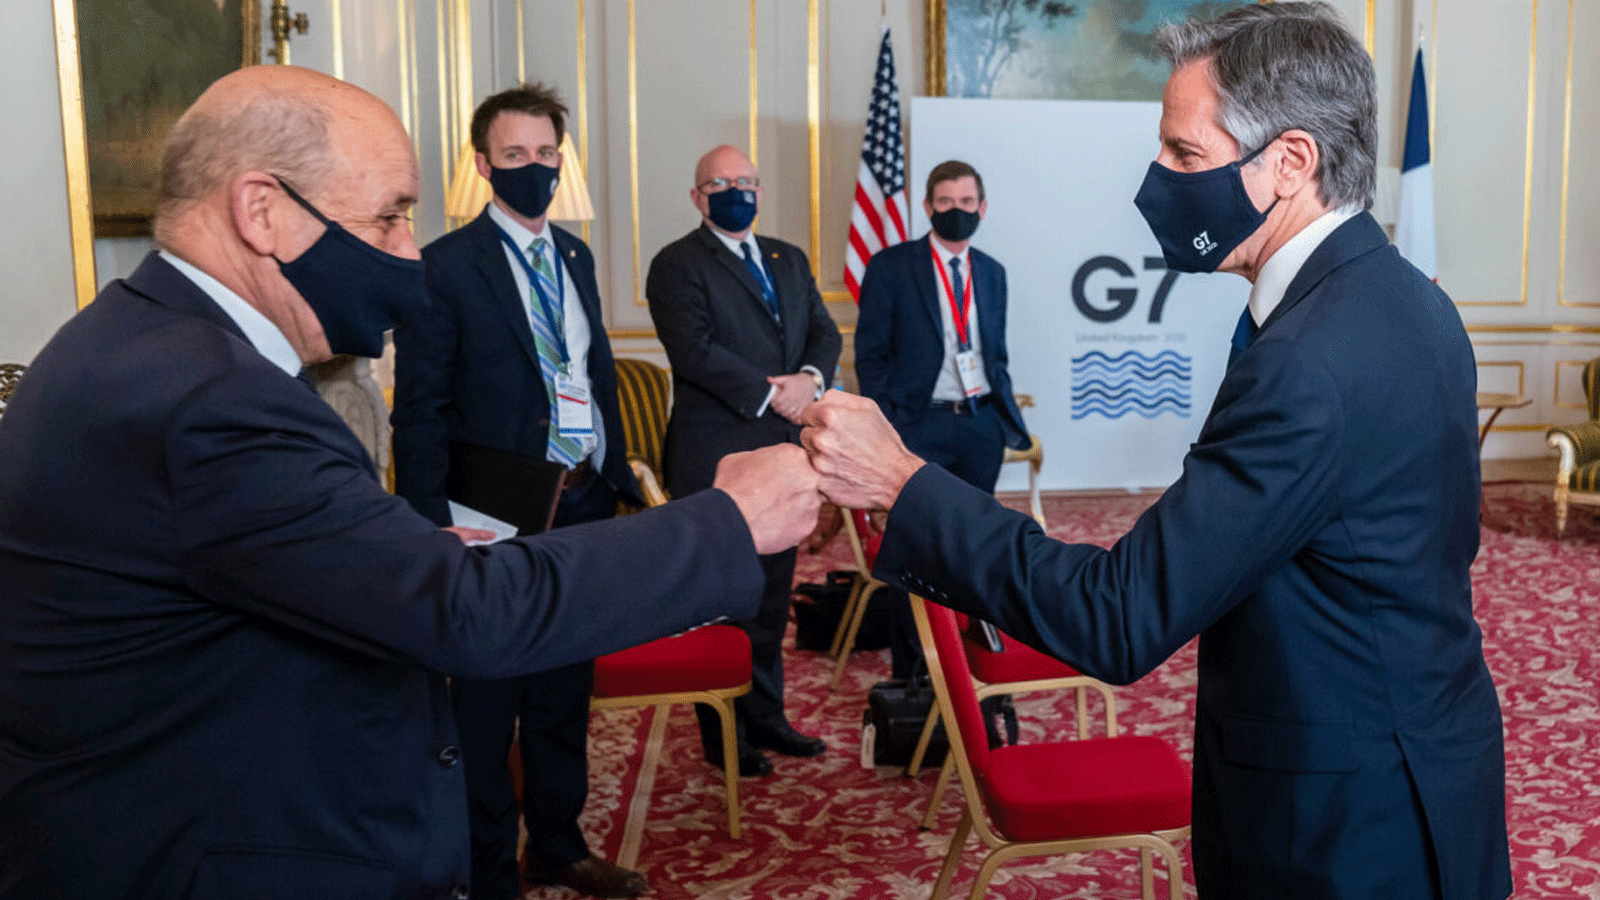 وزير الخارجية أنطوني بلينكين يلتقي بوزير الخارجية الفرنسي جان إيف لو درين في لندن/ المملكة المتحدة، في 4 أيار/ مايو 2021. صورة من إعلام وزارة الخارجية الأميركية)